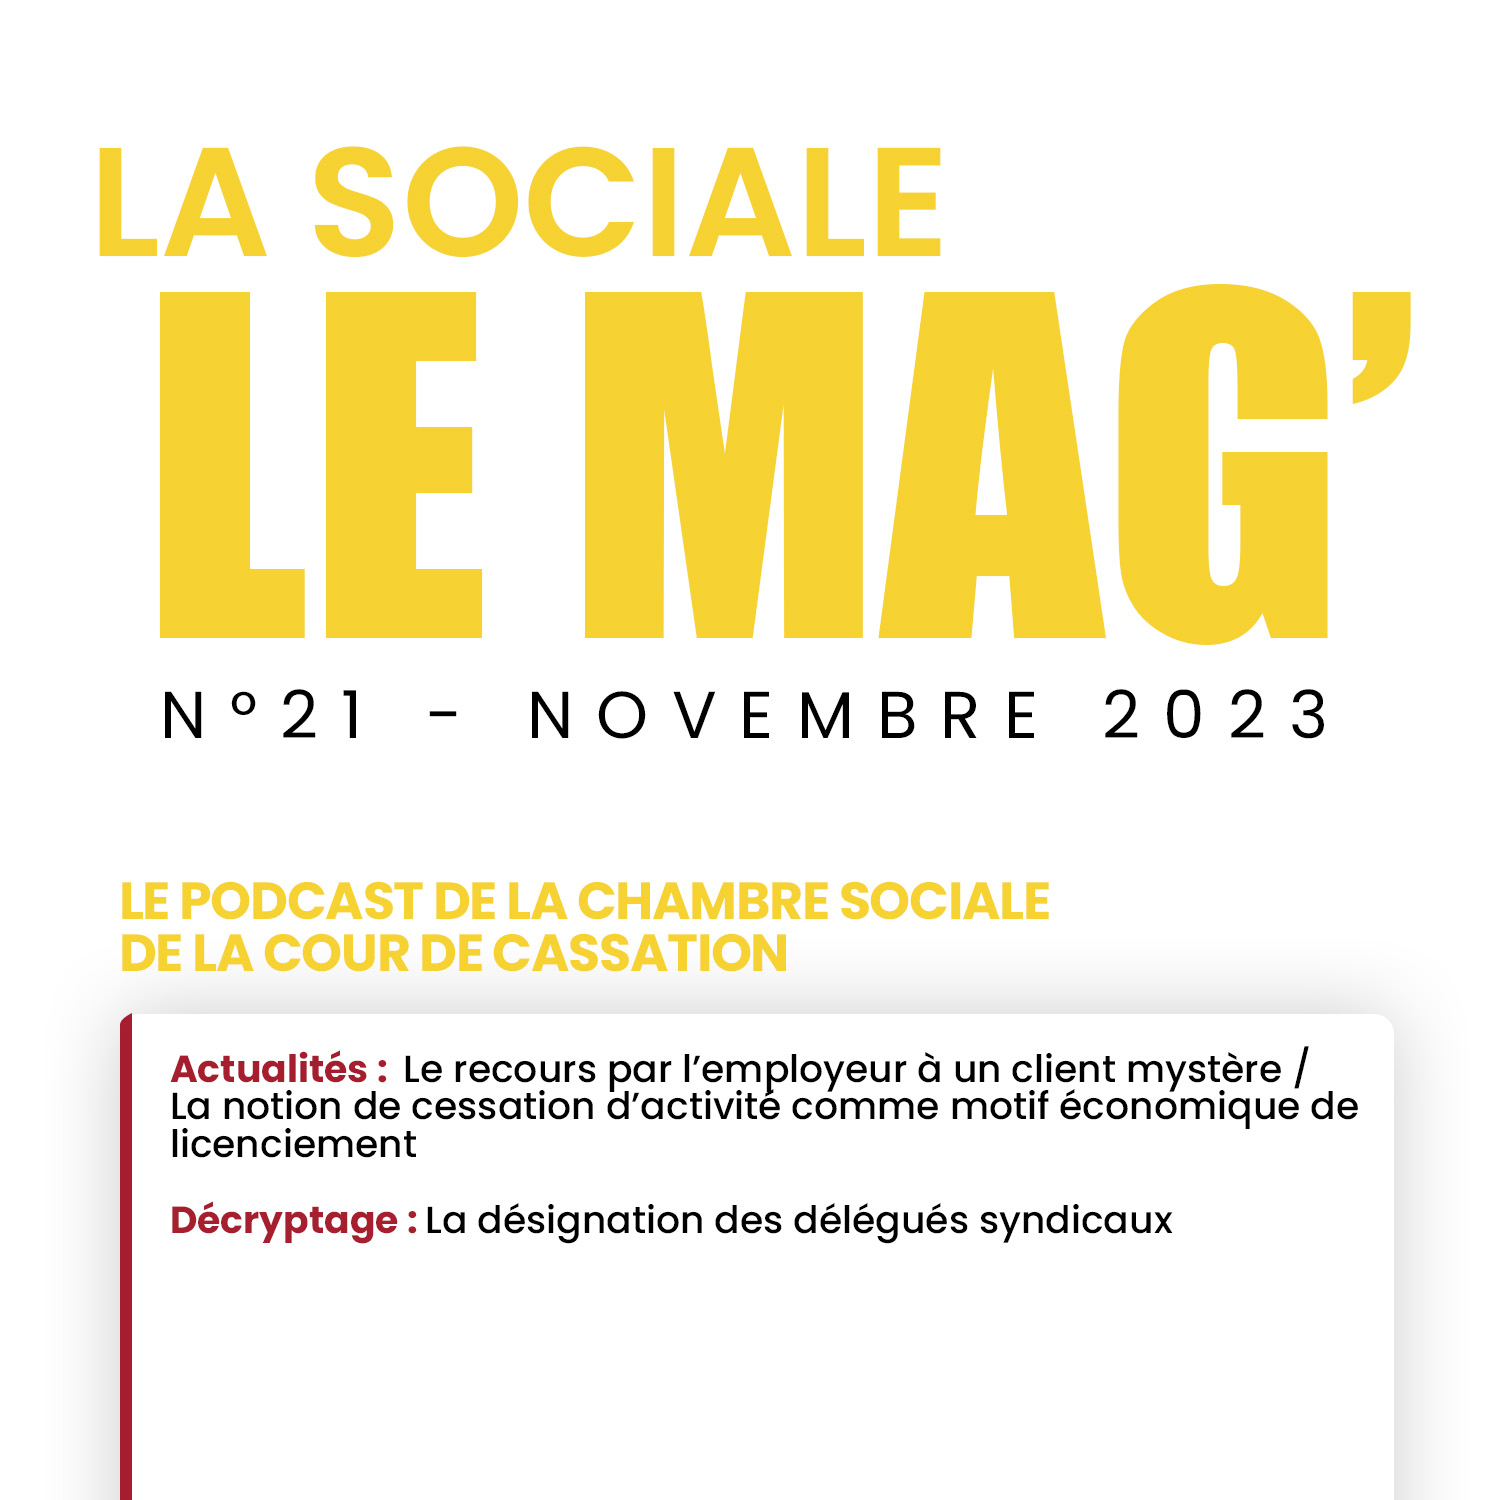 La Sociale Le Mag’ | Le podcast de la chambre sociale de la Cour de cassation #21